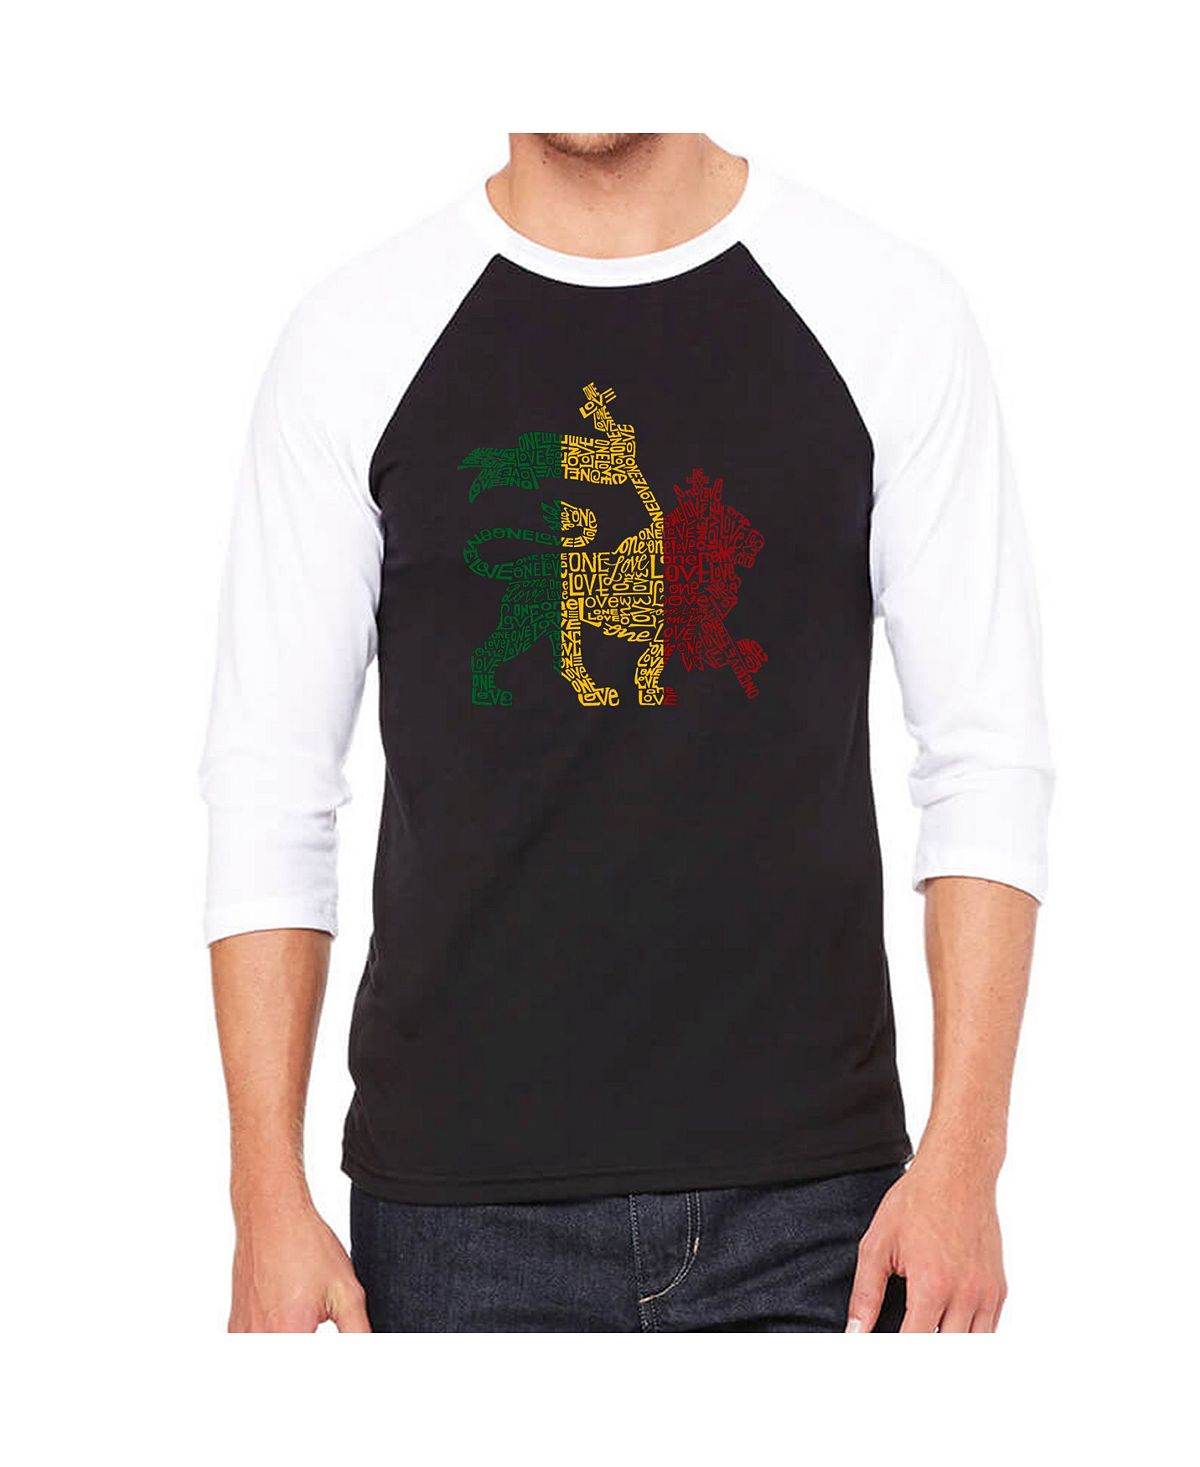 Мужская футболка с принтом lion и регланом word art LA Pop Art, черный послание без слов